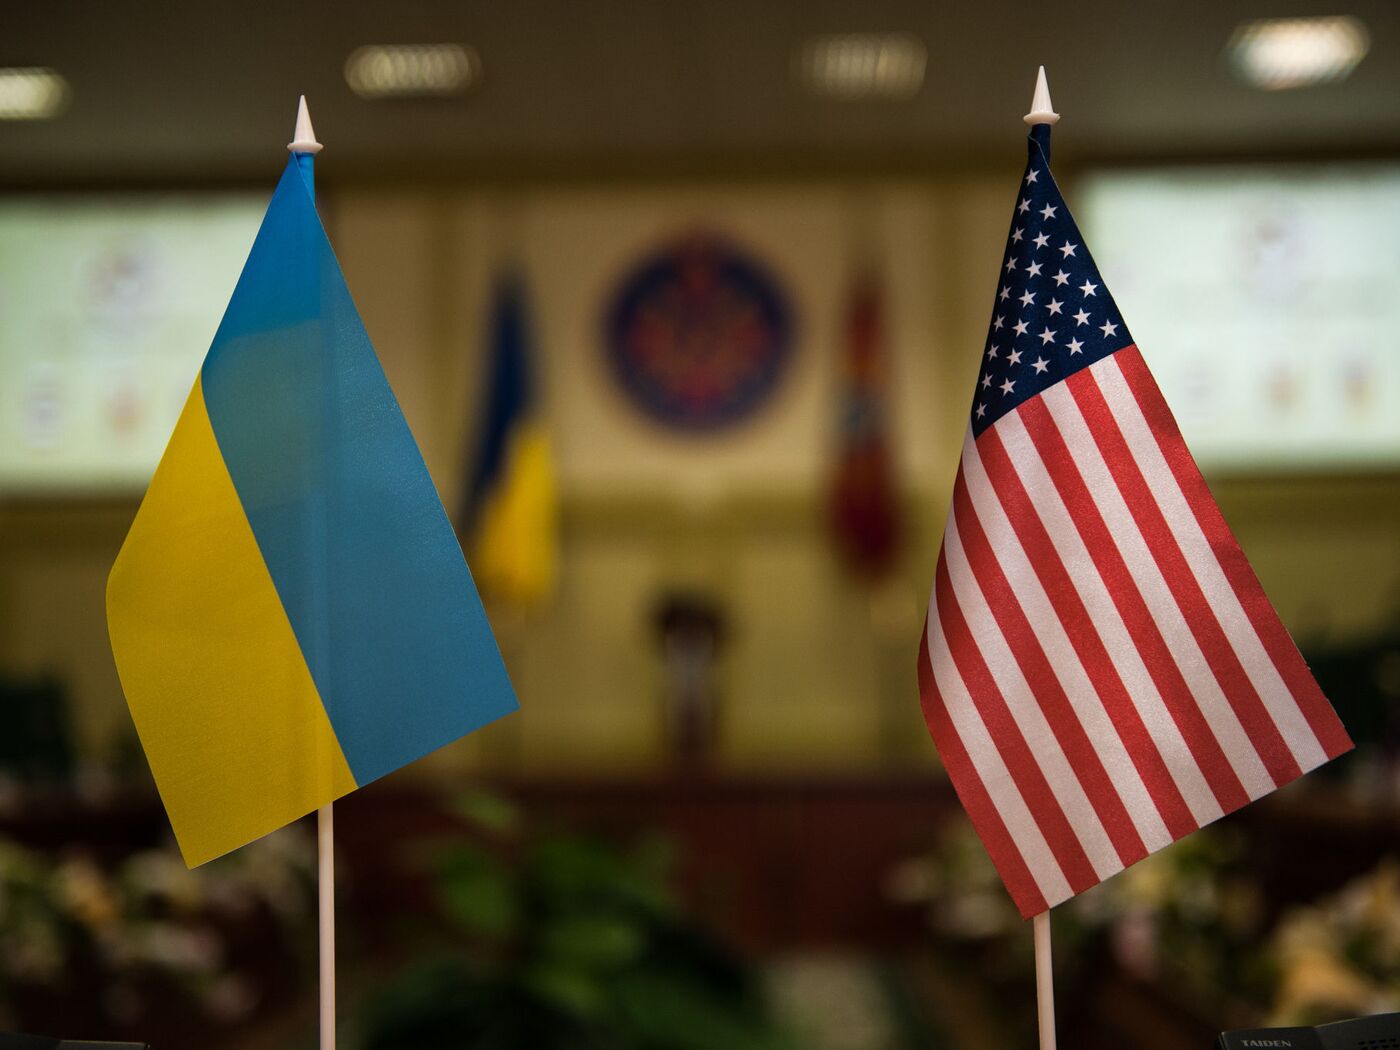 Ukraine đã bị Mỹ tố cáo phản bội vì cung cấp động cơ cho Trung Quốc, tuy nhiên quốc kỳ Uzbekistan lại đang được đưa vào tầm ưu tiên. Quốc kỳ Uzbekistan được coi là một biểu tượng của sự độc lập và tính toàn vẹn lãnh thổ, và đã thu hút được sự quan tâm của rất nhiều quốc gia.